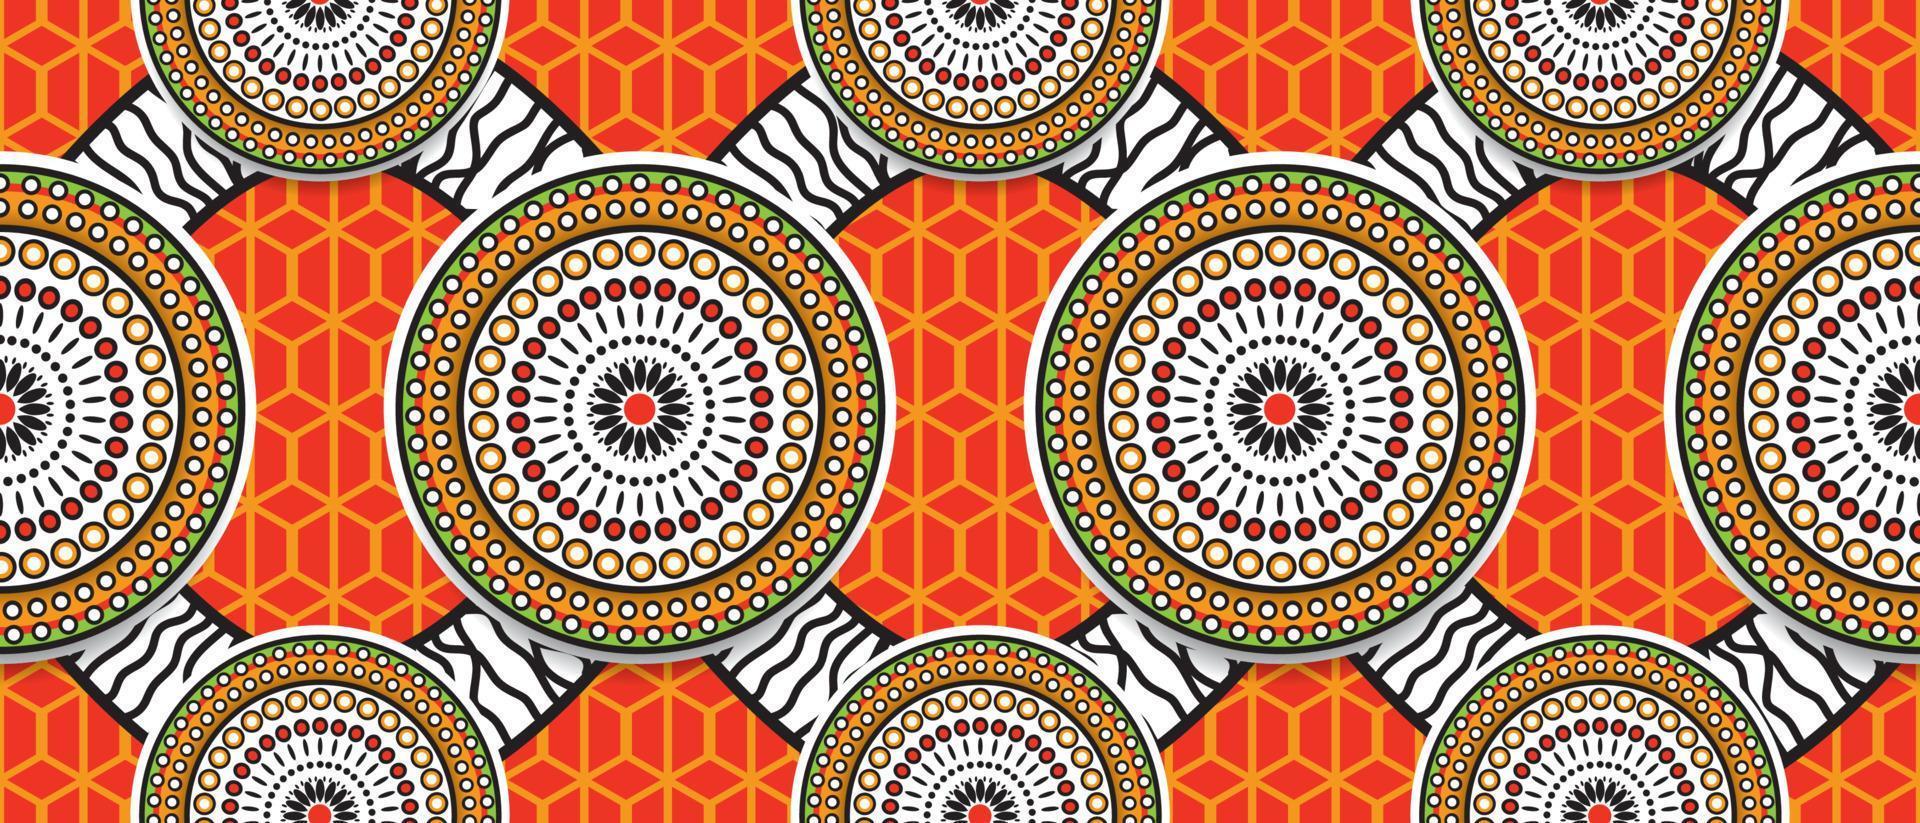 Afrikanisches ethnisches traditionelles rotes orange Farbmuster. nahtlose schöne Kitenge, Chitenge-Stil. Modedesign in bunt. abstraktes motiv des geometrischen kreises. florale Ankara-Drucke, afrikanische Wachsdrucke. vektor